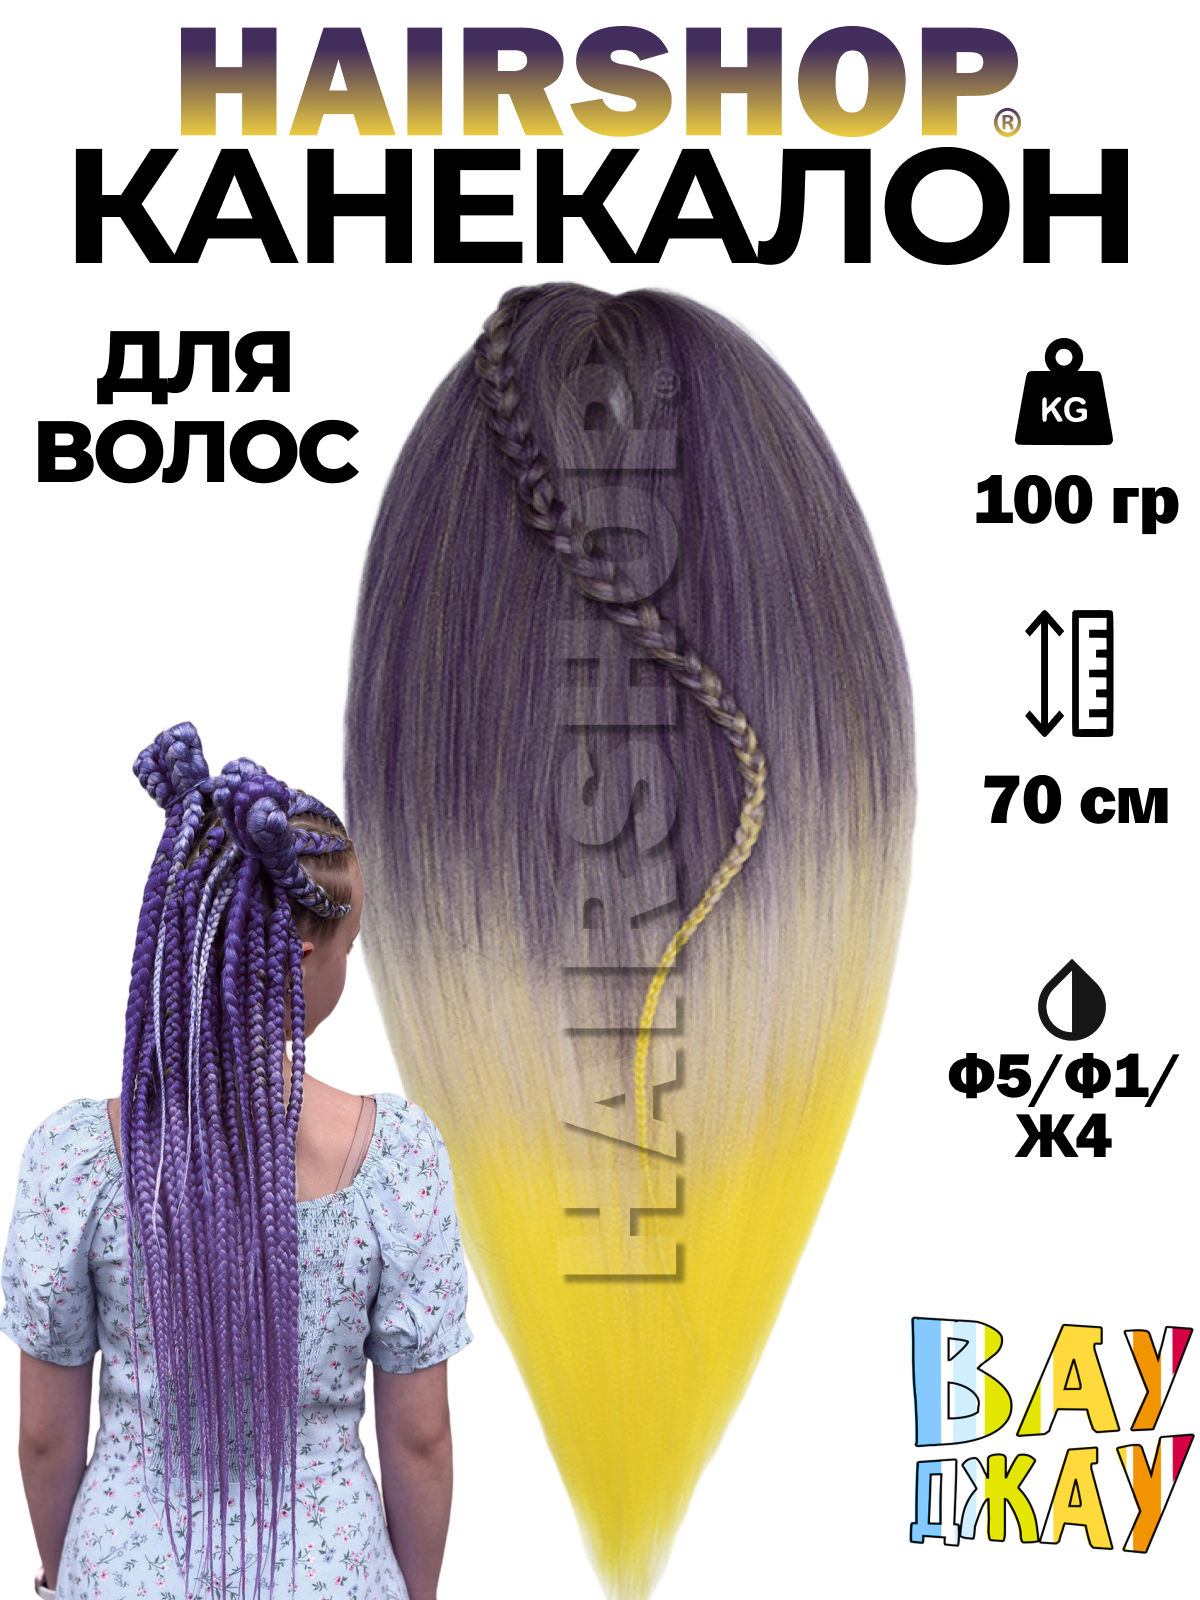 Канекалон HAIRSHOP Вау Джау Ф5-Ф1-Ж4 1,3м 100г Фиолетово-баклажановый, Фиолетовый, Желтый текстовыделитель двусторонний berlingo textline hl220 0 5 4 мм желтый фиолетовый